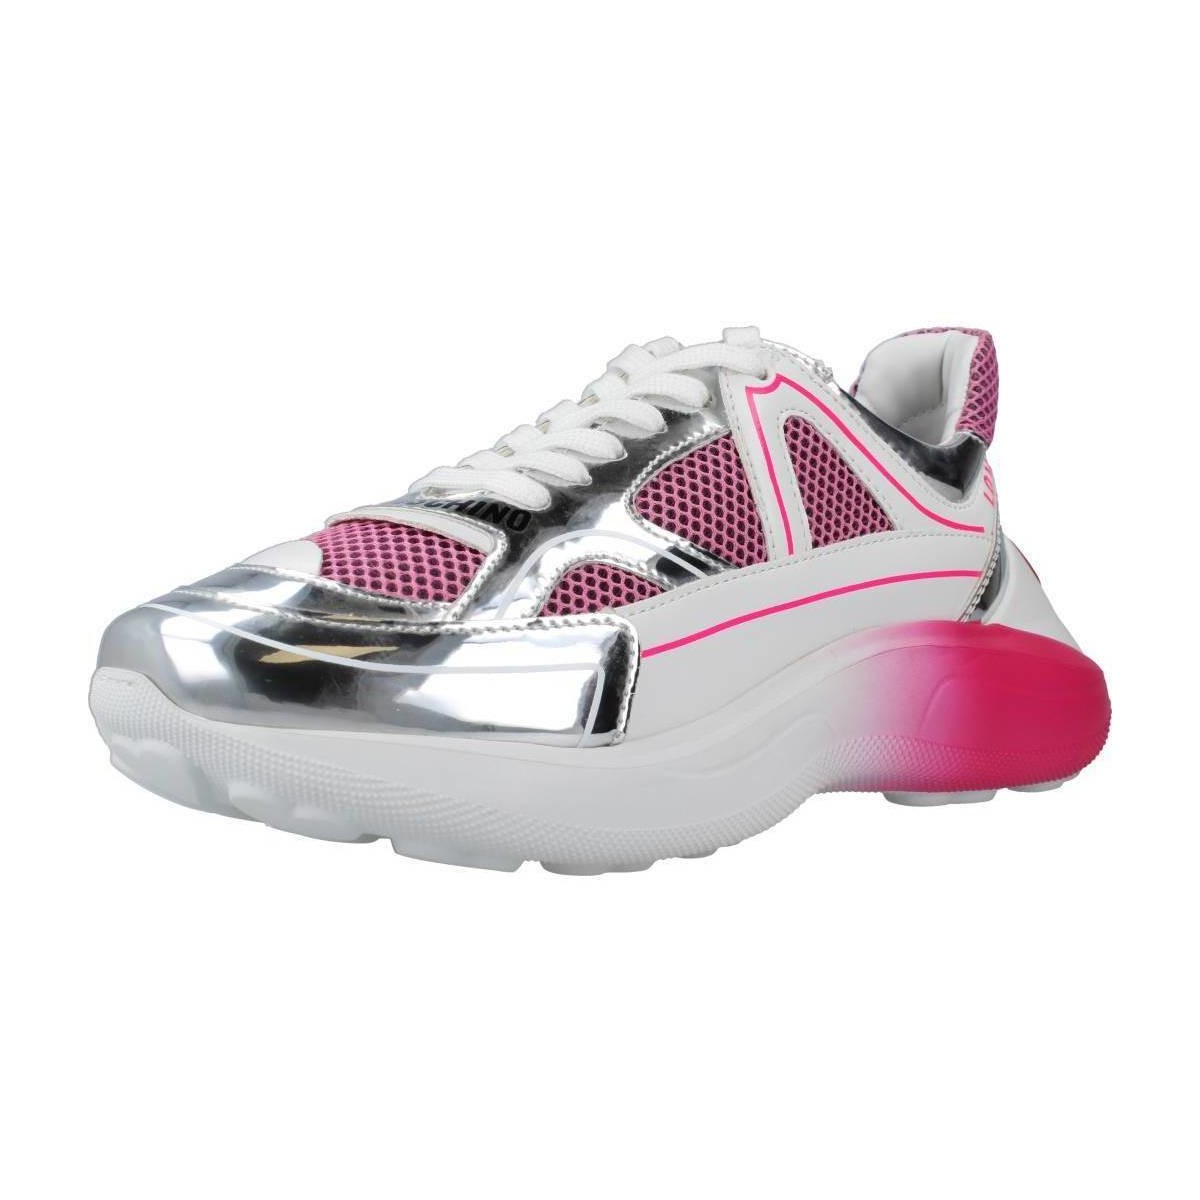 Schuhe Damen Sneaker Love Moschino SNEAKERD RUNNING60 Rosa